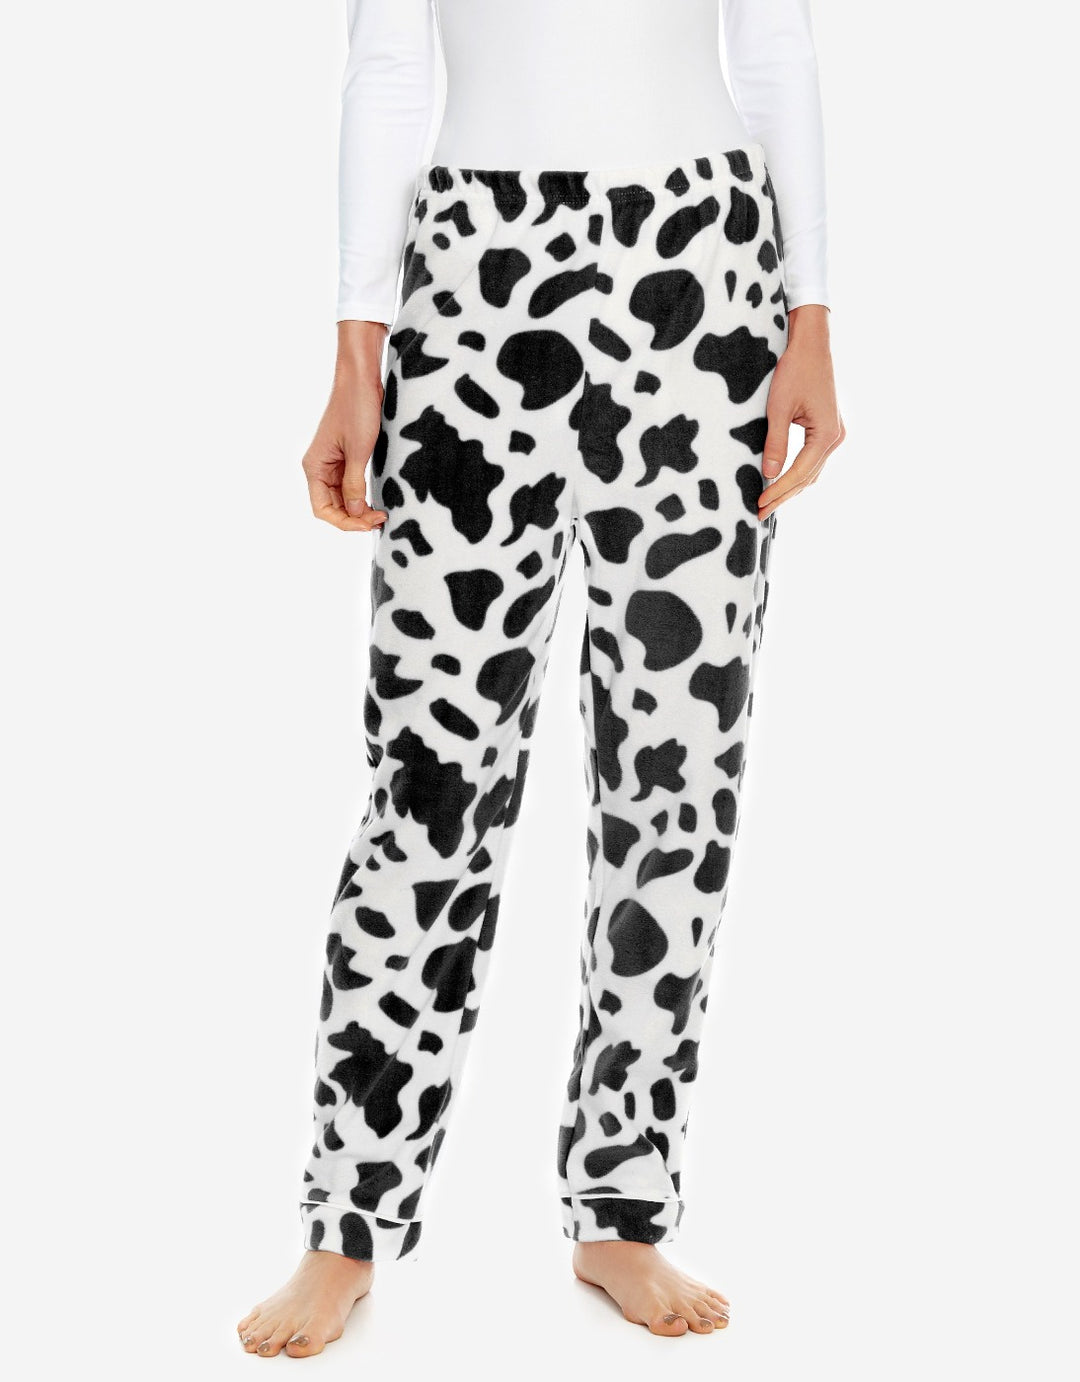 cow print fleece women's pants